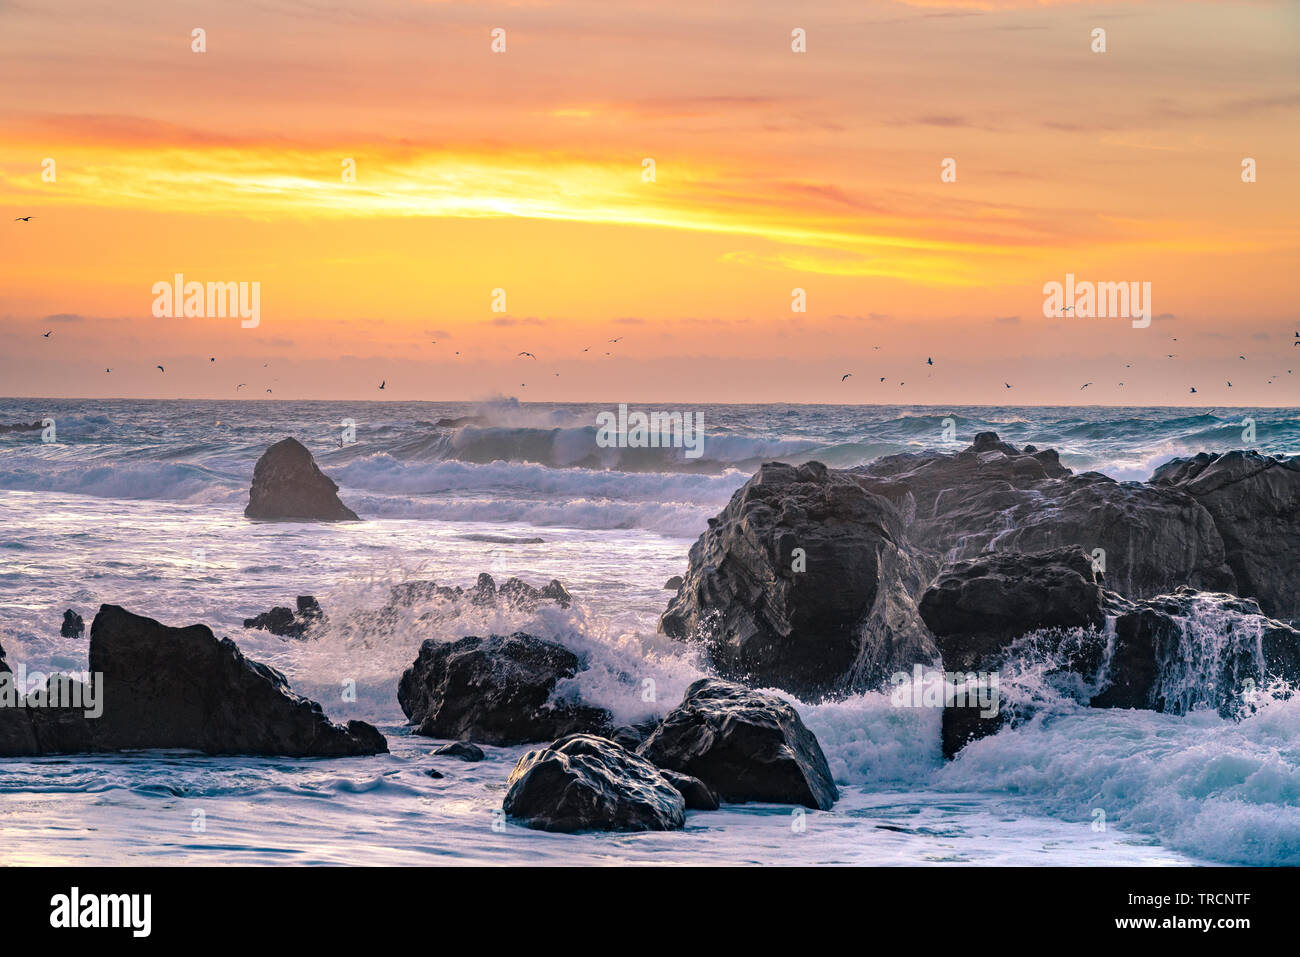 Big Sur, Kalifornien - schönen Sonnenuntergang am California Beach mit großen Wellen, die über Felsen und eine Schar Vögel in der Ferne fliegen. Stockfoto